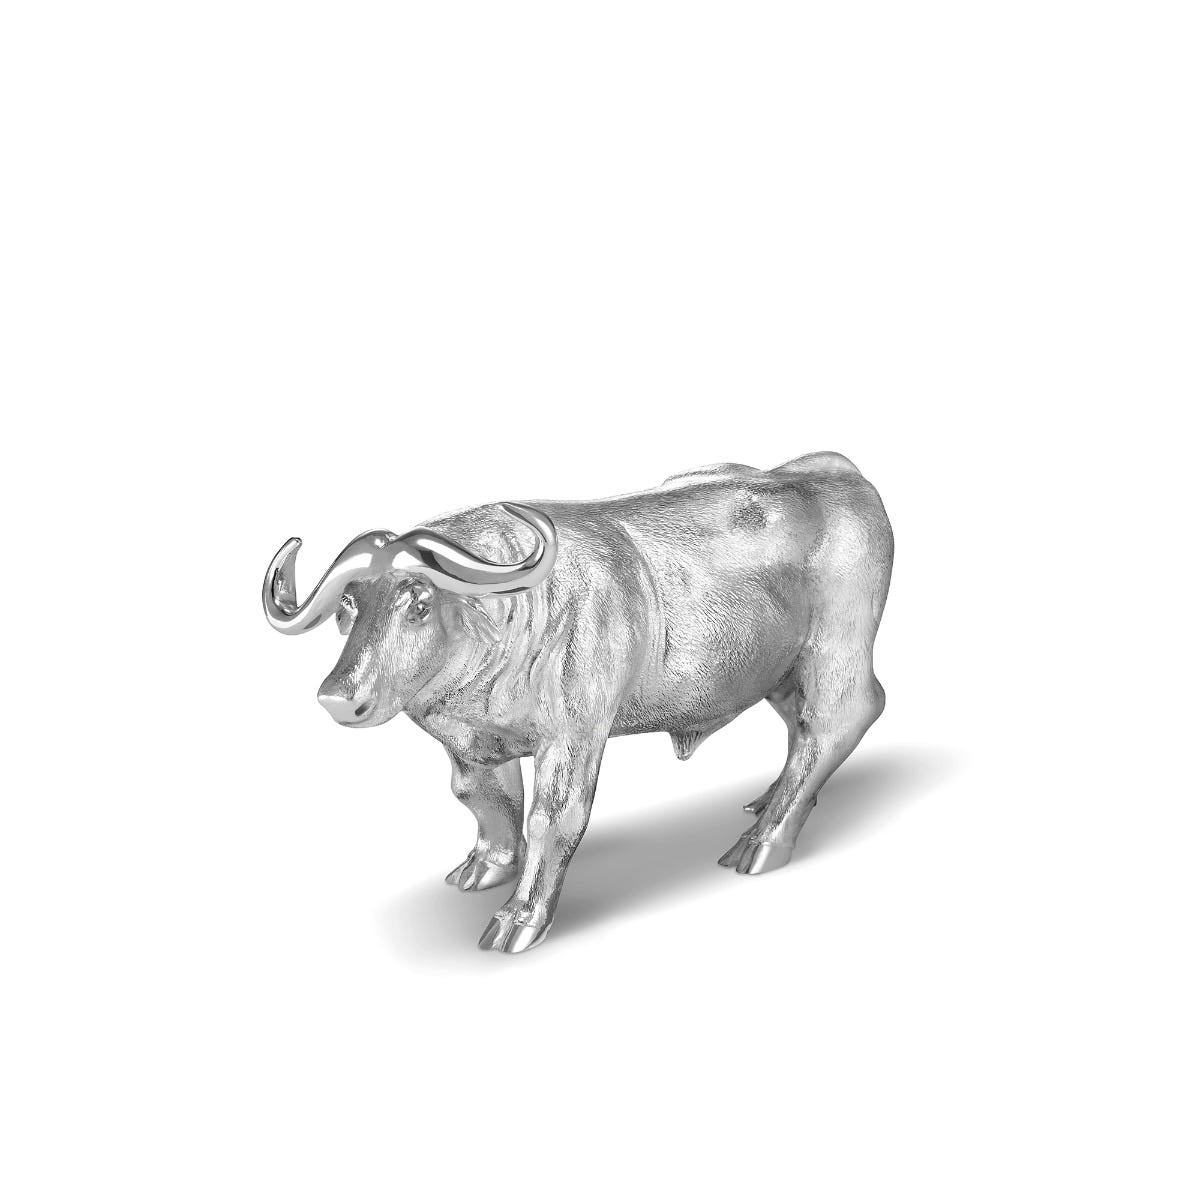 Cape Buffalo Figurine in Sterling Silver